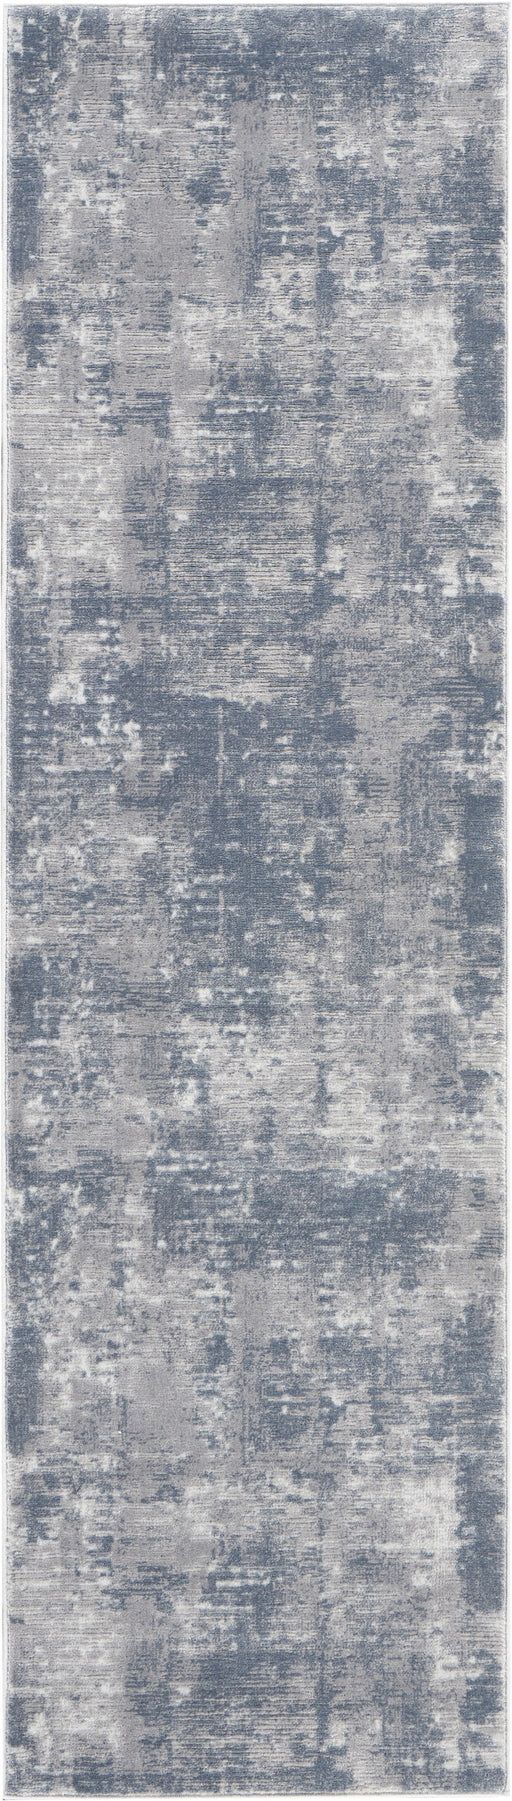 Nourison Rustic Textures RUS05 Grey 8' Runner Hallway Rug